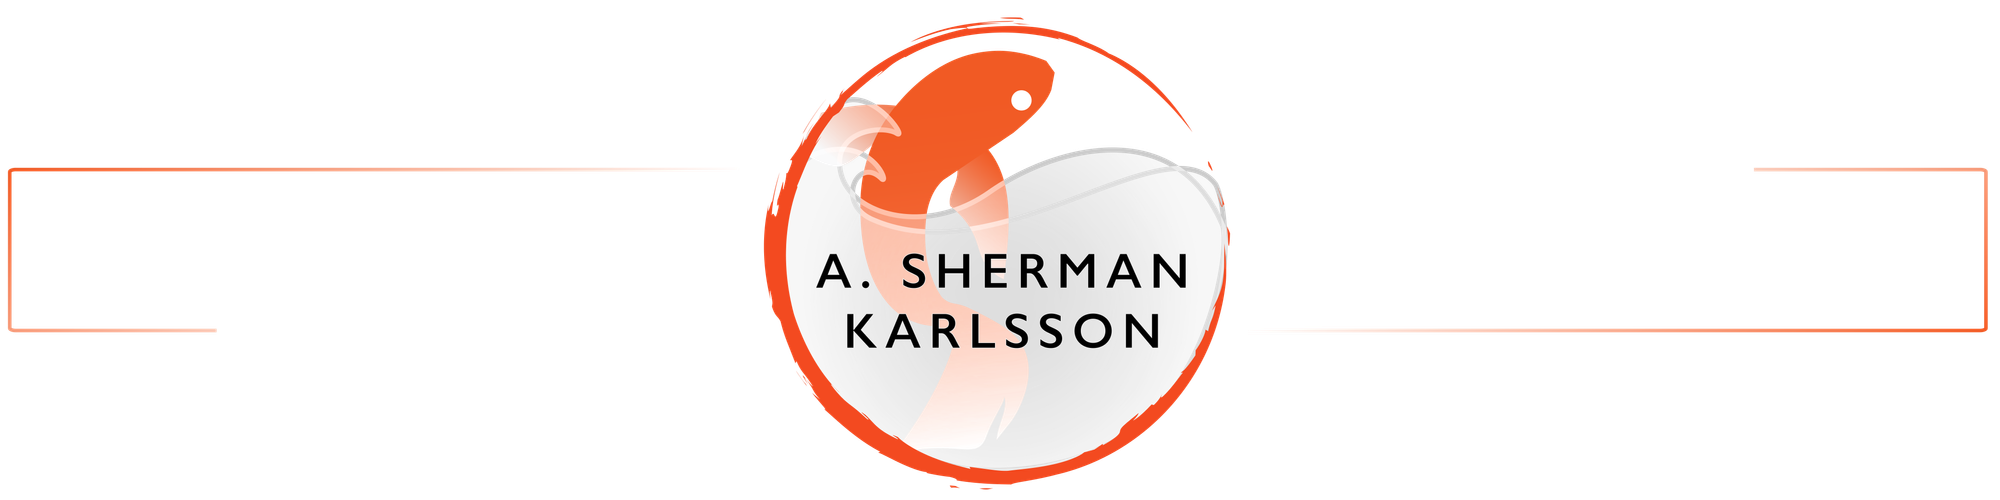 A. Sherman Karlsson